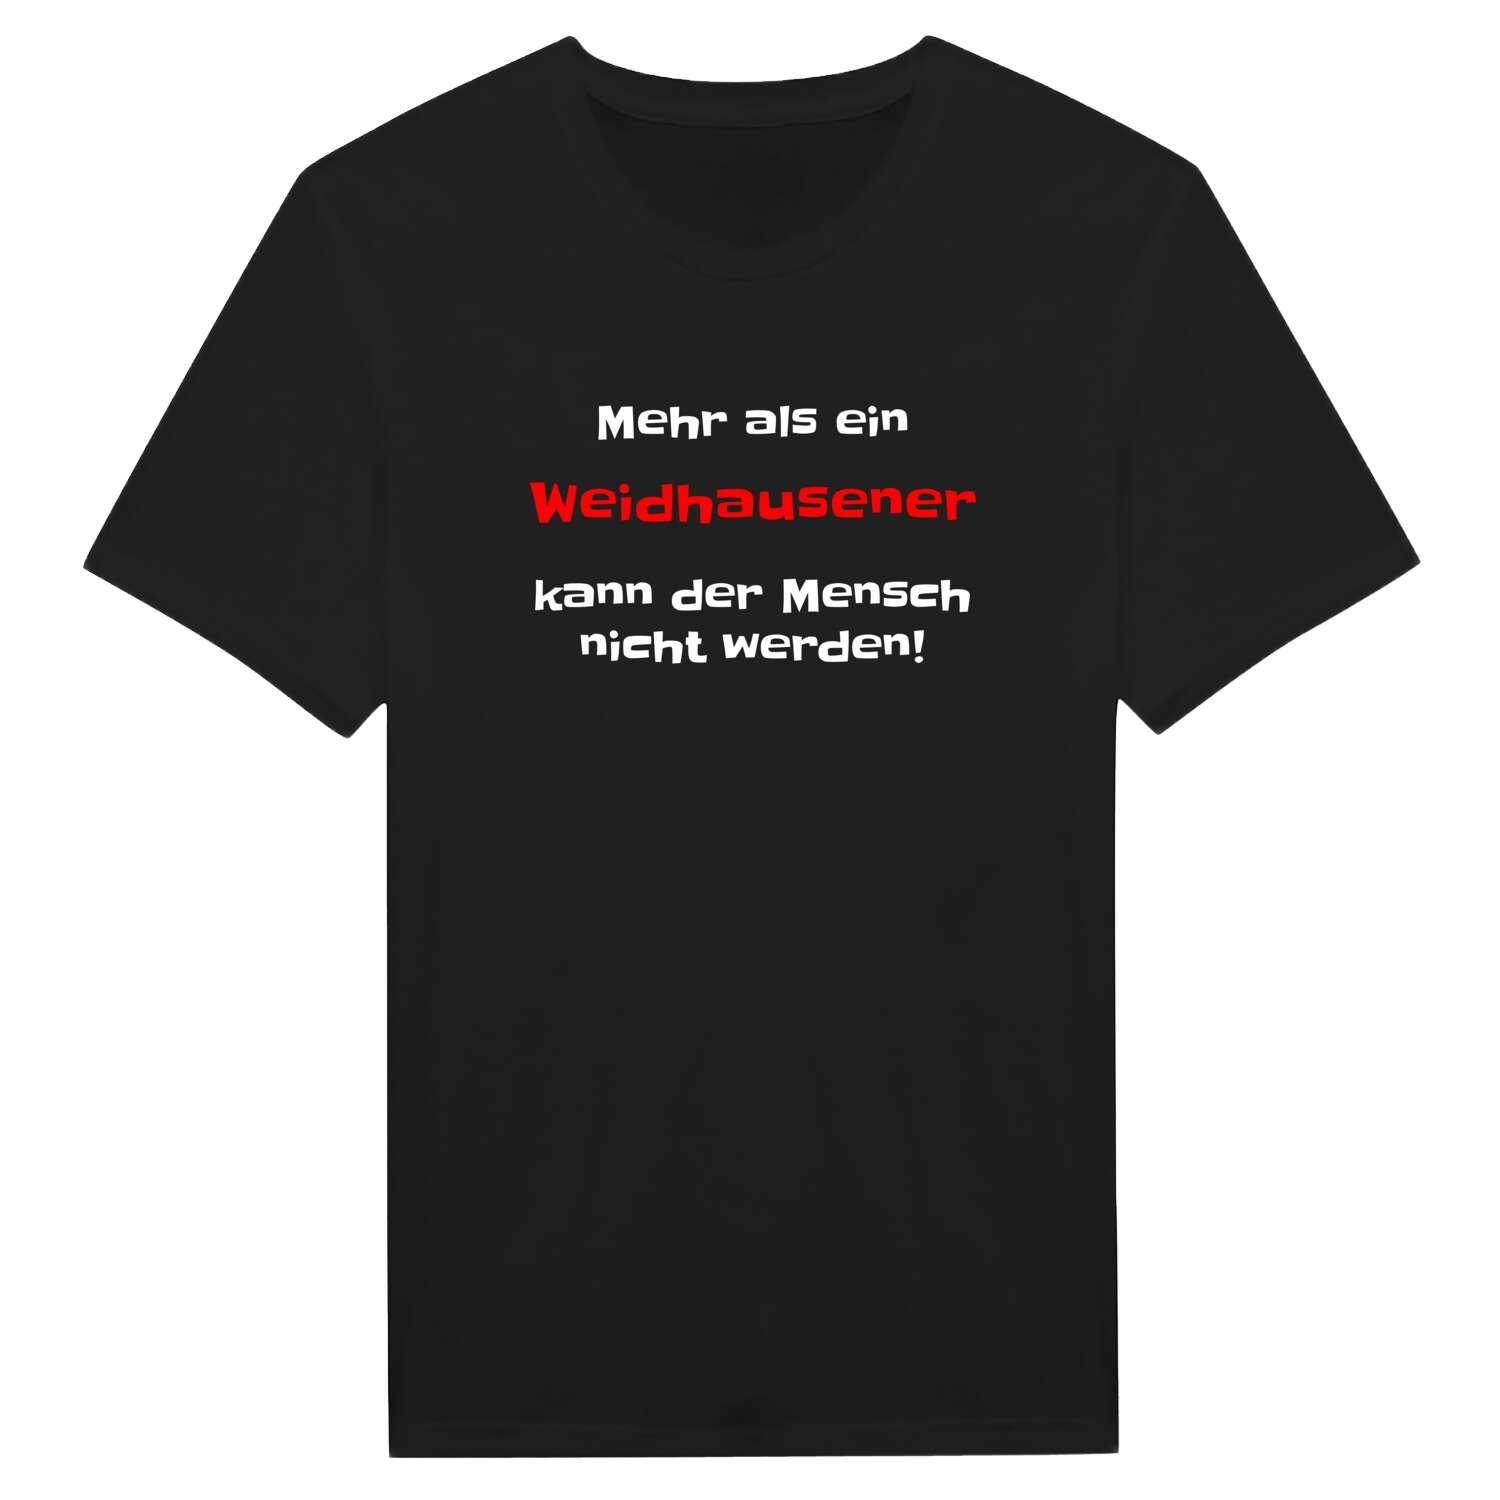 Weidhausen T-Shirt »Mehr als ein«